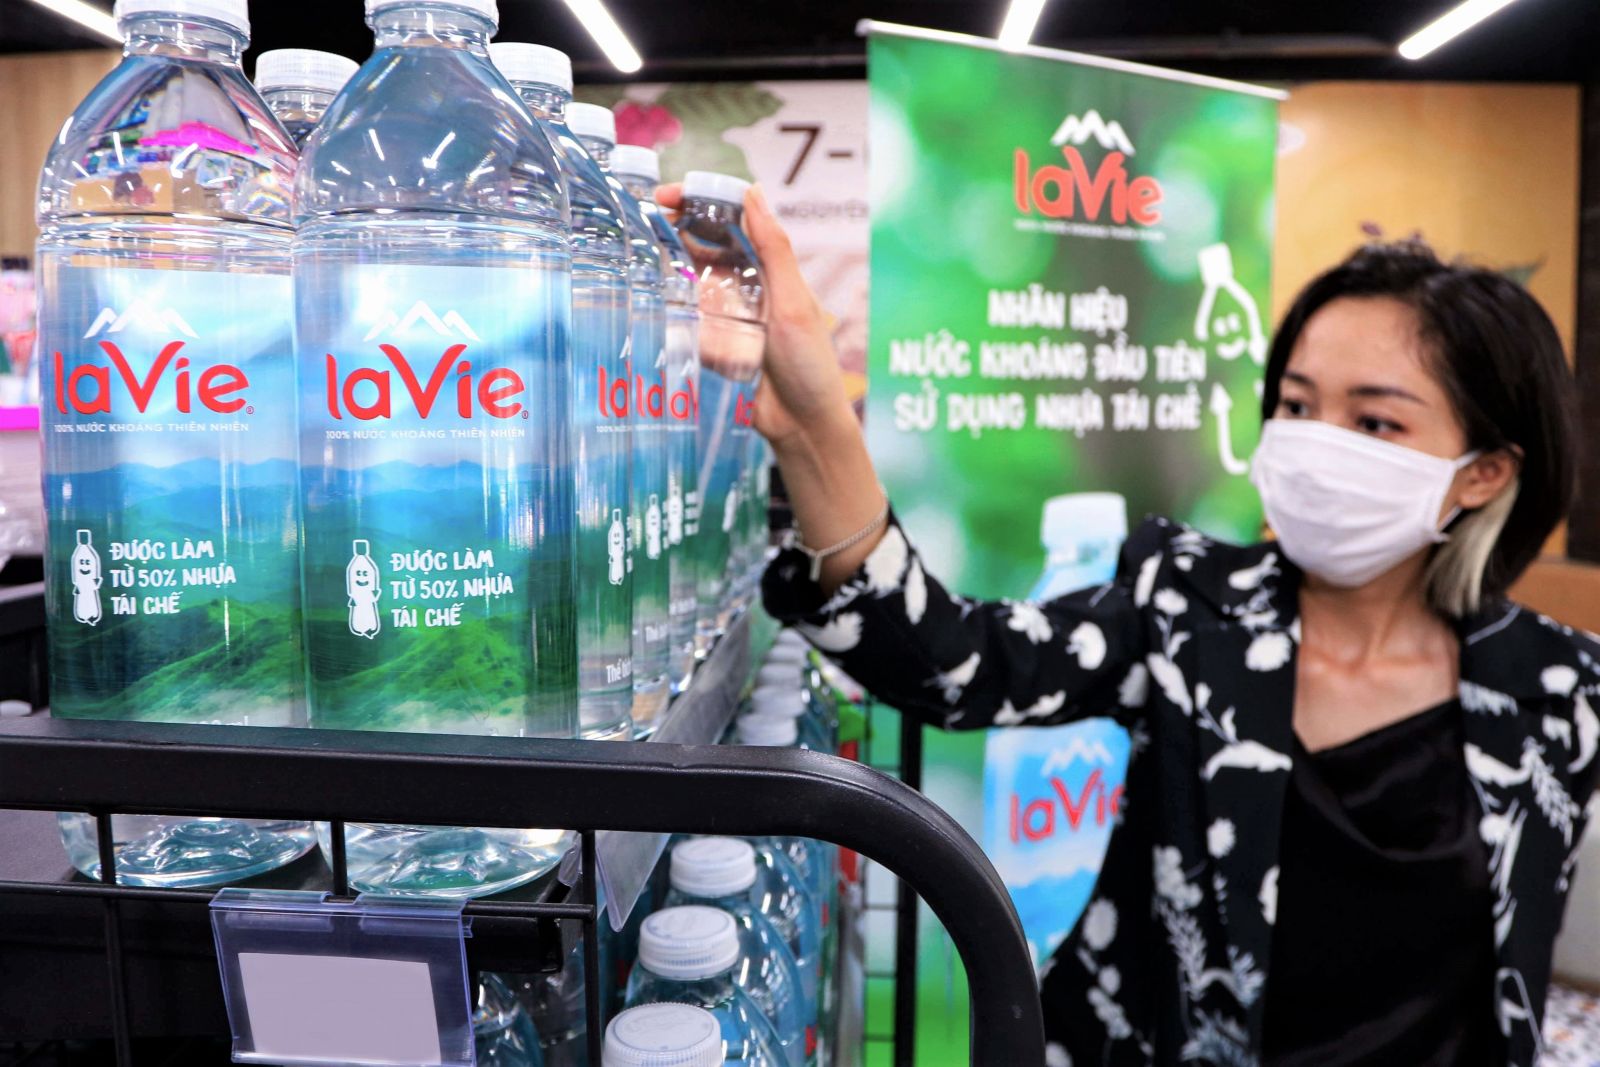 La Vie là thương hiệu nước khoáng đầu tiên tại Việt Nam sử dụng chai được làm từ nhựa tái sinh.